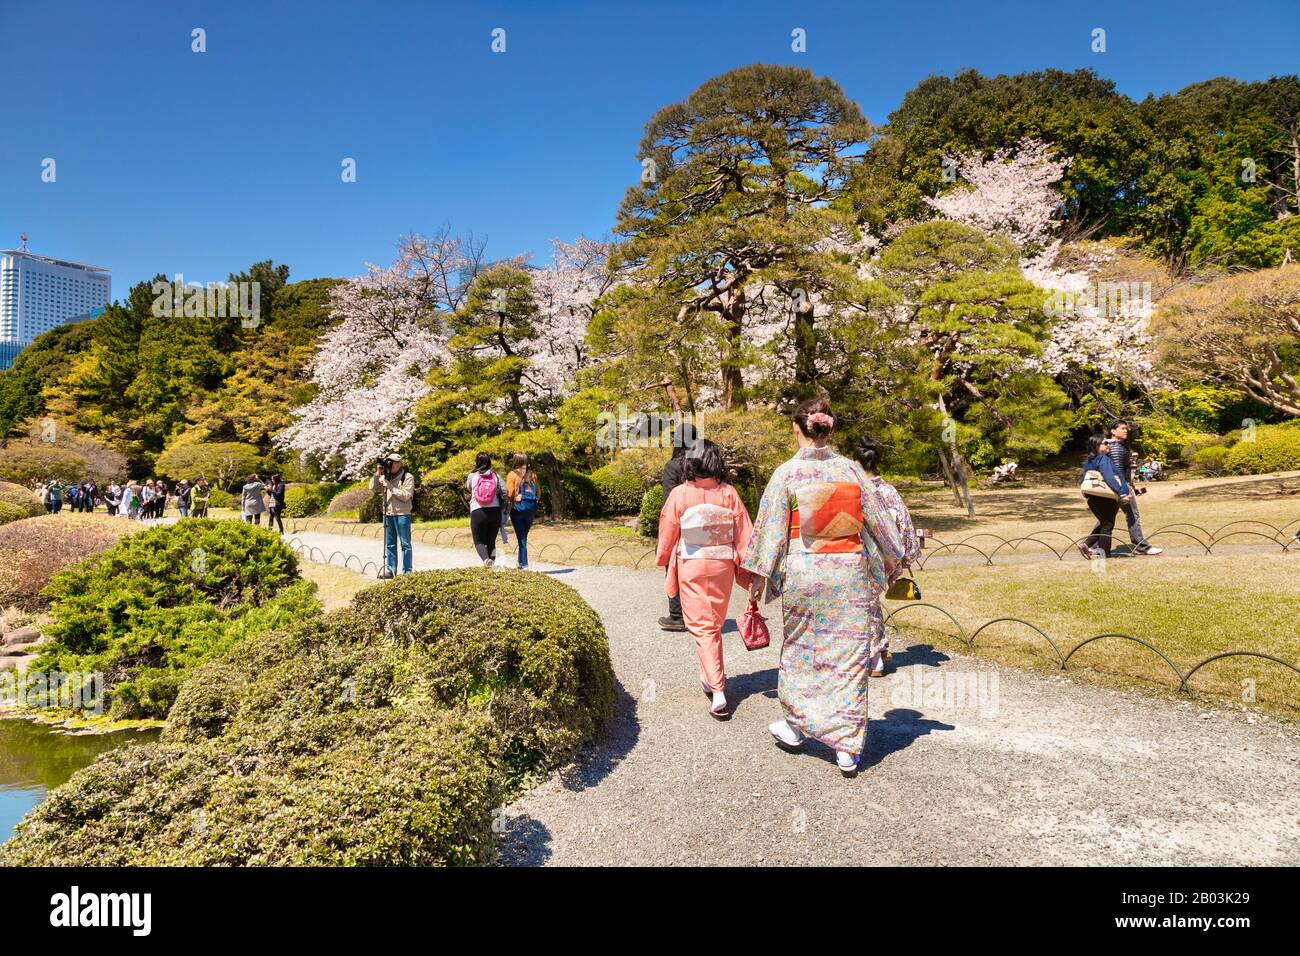 4 de abril de 2019: Tokio, Japón - Kimono viste turistas en Shinjuku Gyoen Park, uno de los parques más famosos de Japón, en la temporada Cherry Blossom. Foto de stock